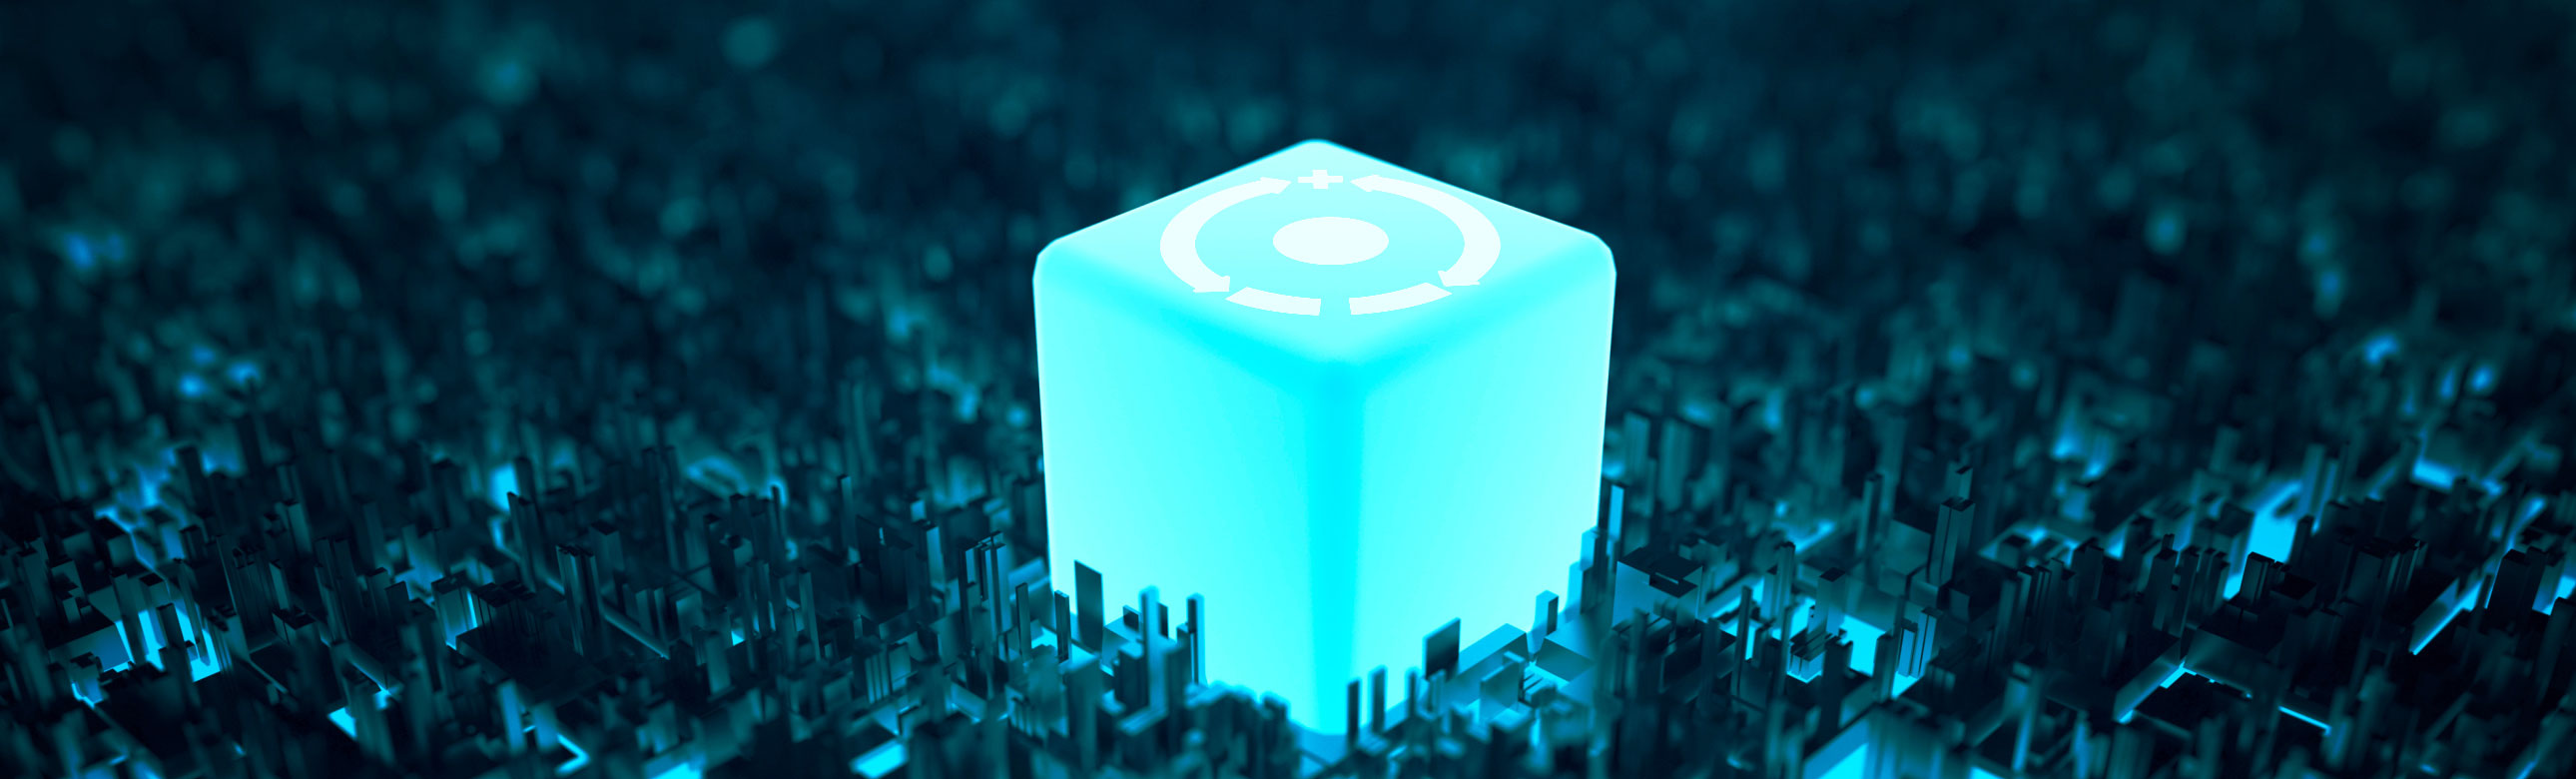 2focusplus cubo azul em destaque